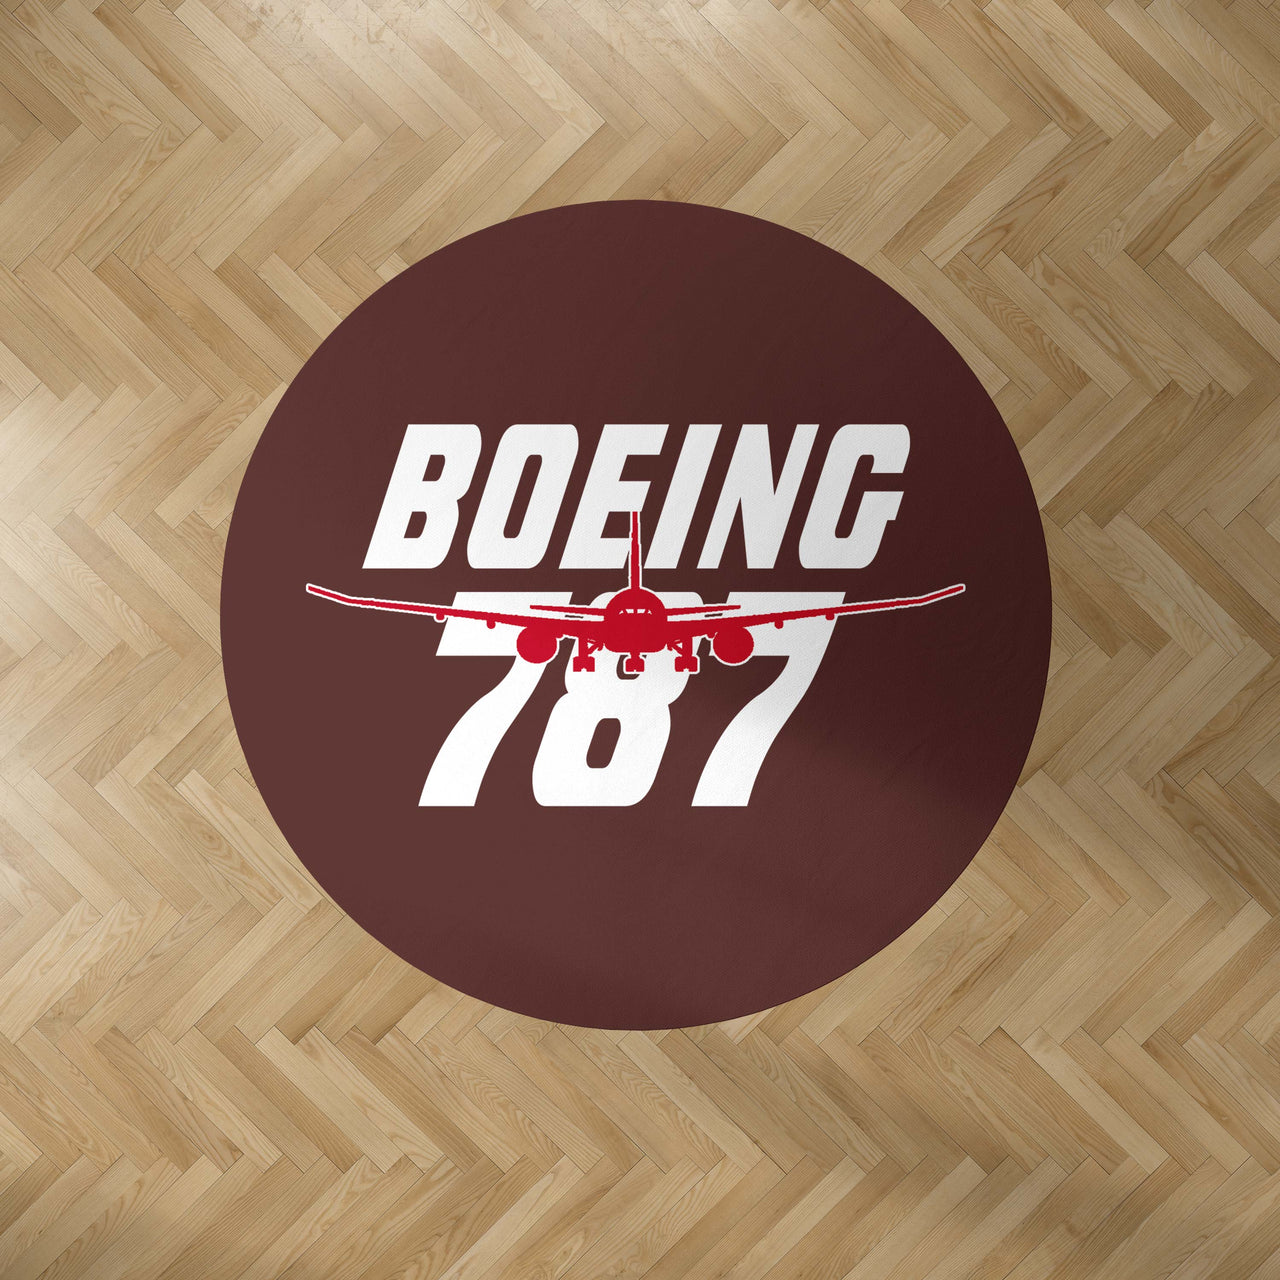 Amazing Boeing 787 Designed Carpet & Floor Mats (Round)